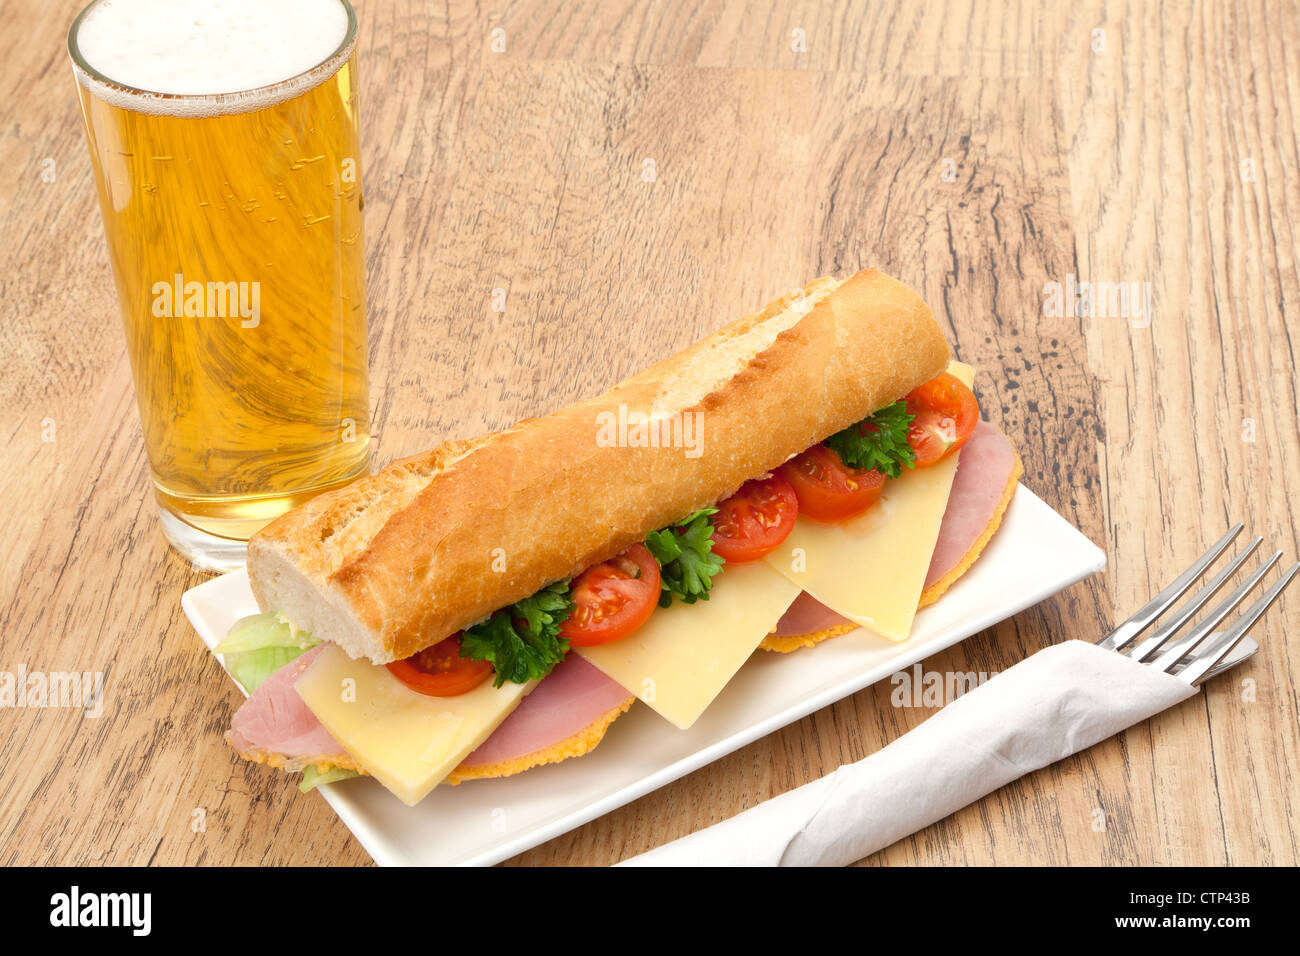 Un pranzo in un pub tradizionale di un prosciutto, formaggio e insalata servita a sandwich in una fetta di pane francese del baguette, accompagnati da una birra. Foto Stock